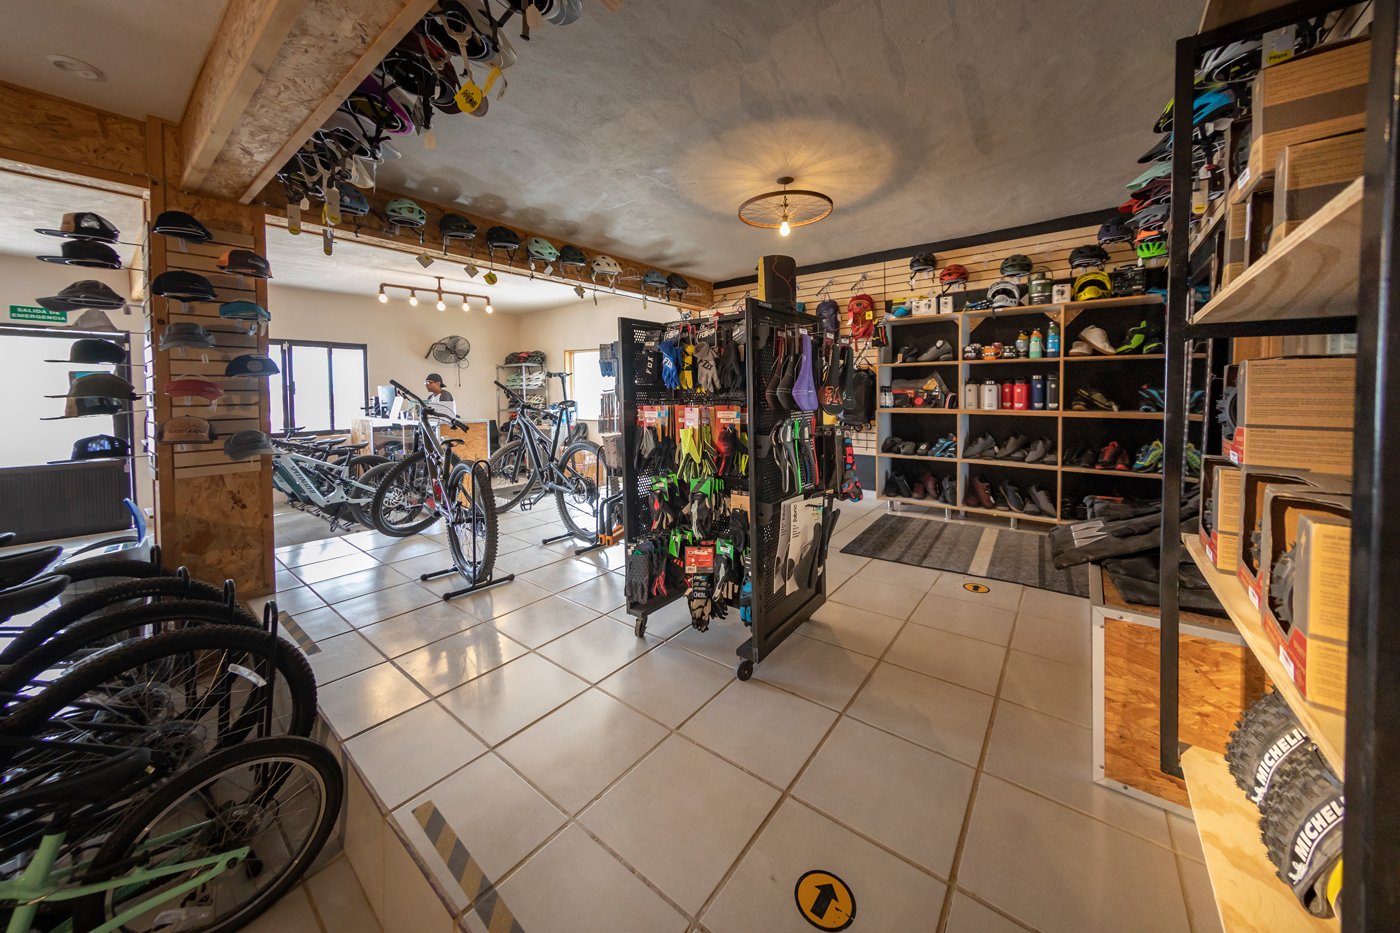  Explora el área de El Sargento por 4 o 8 horas   Tienda y renta de bicicletas en línea     Reserva Aquí   